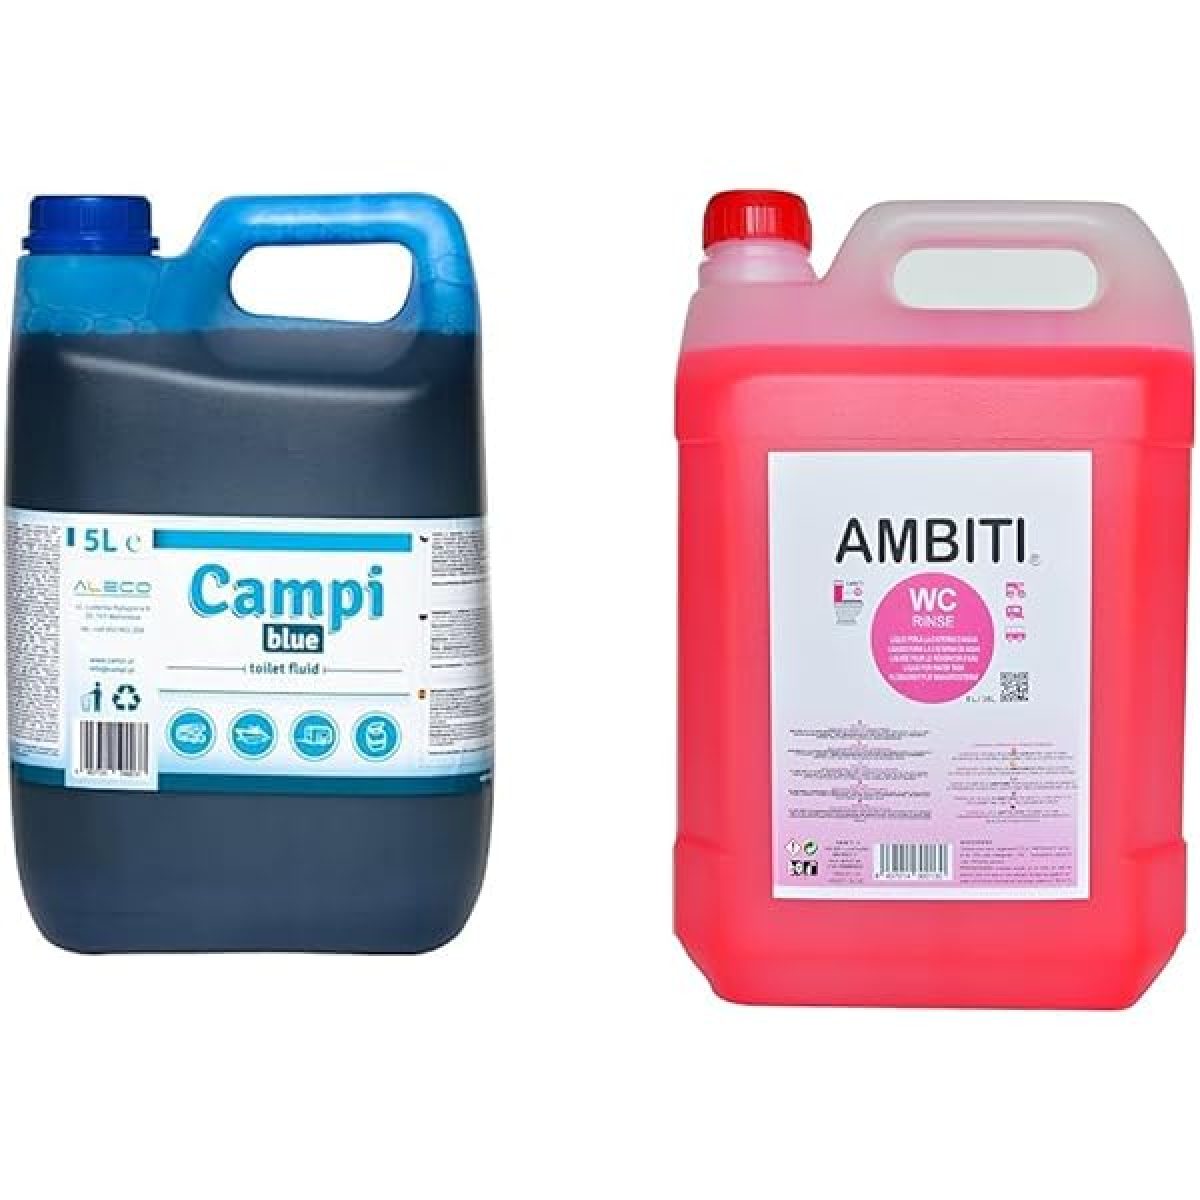 AMBITI- Blue, Eliminación Residuos, Autocaravanas y Caravanas, Inodoro, WC, Volumen 2 Litros